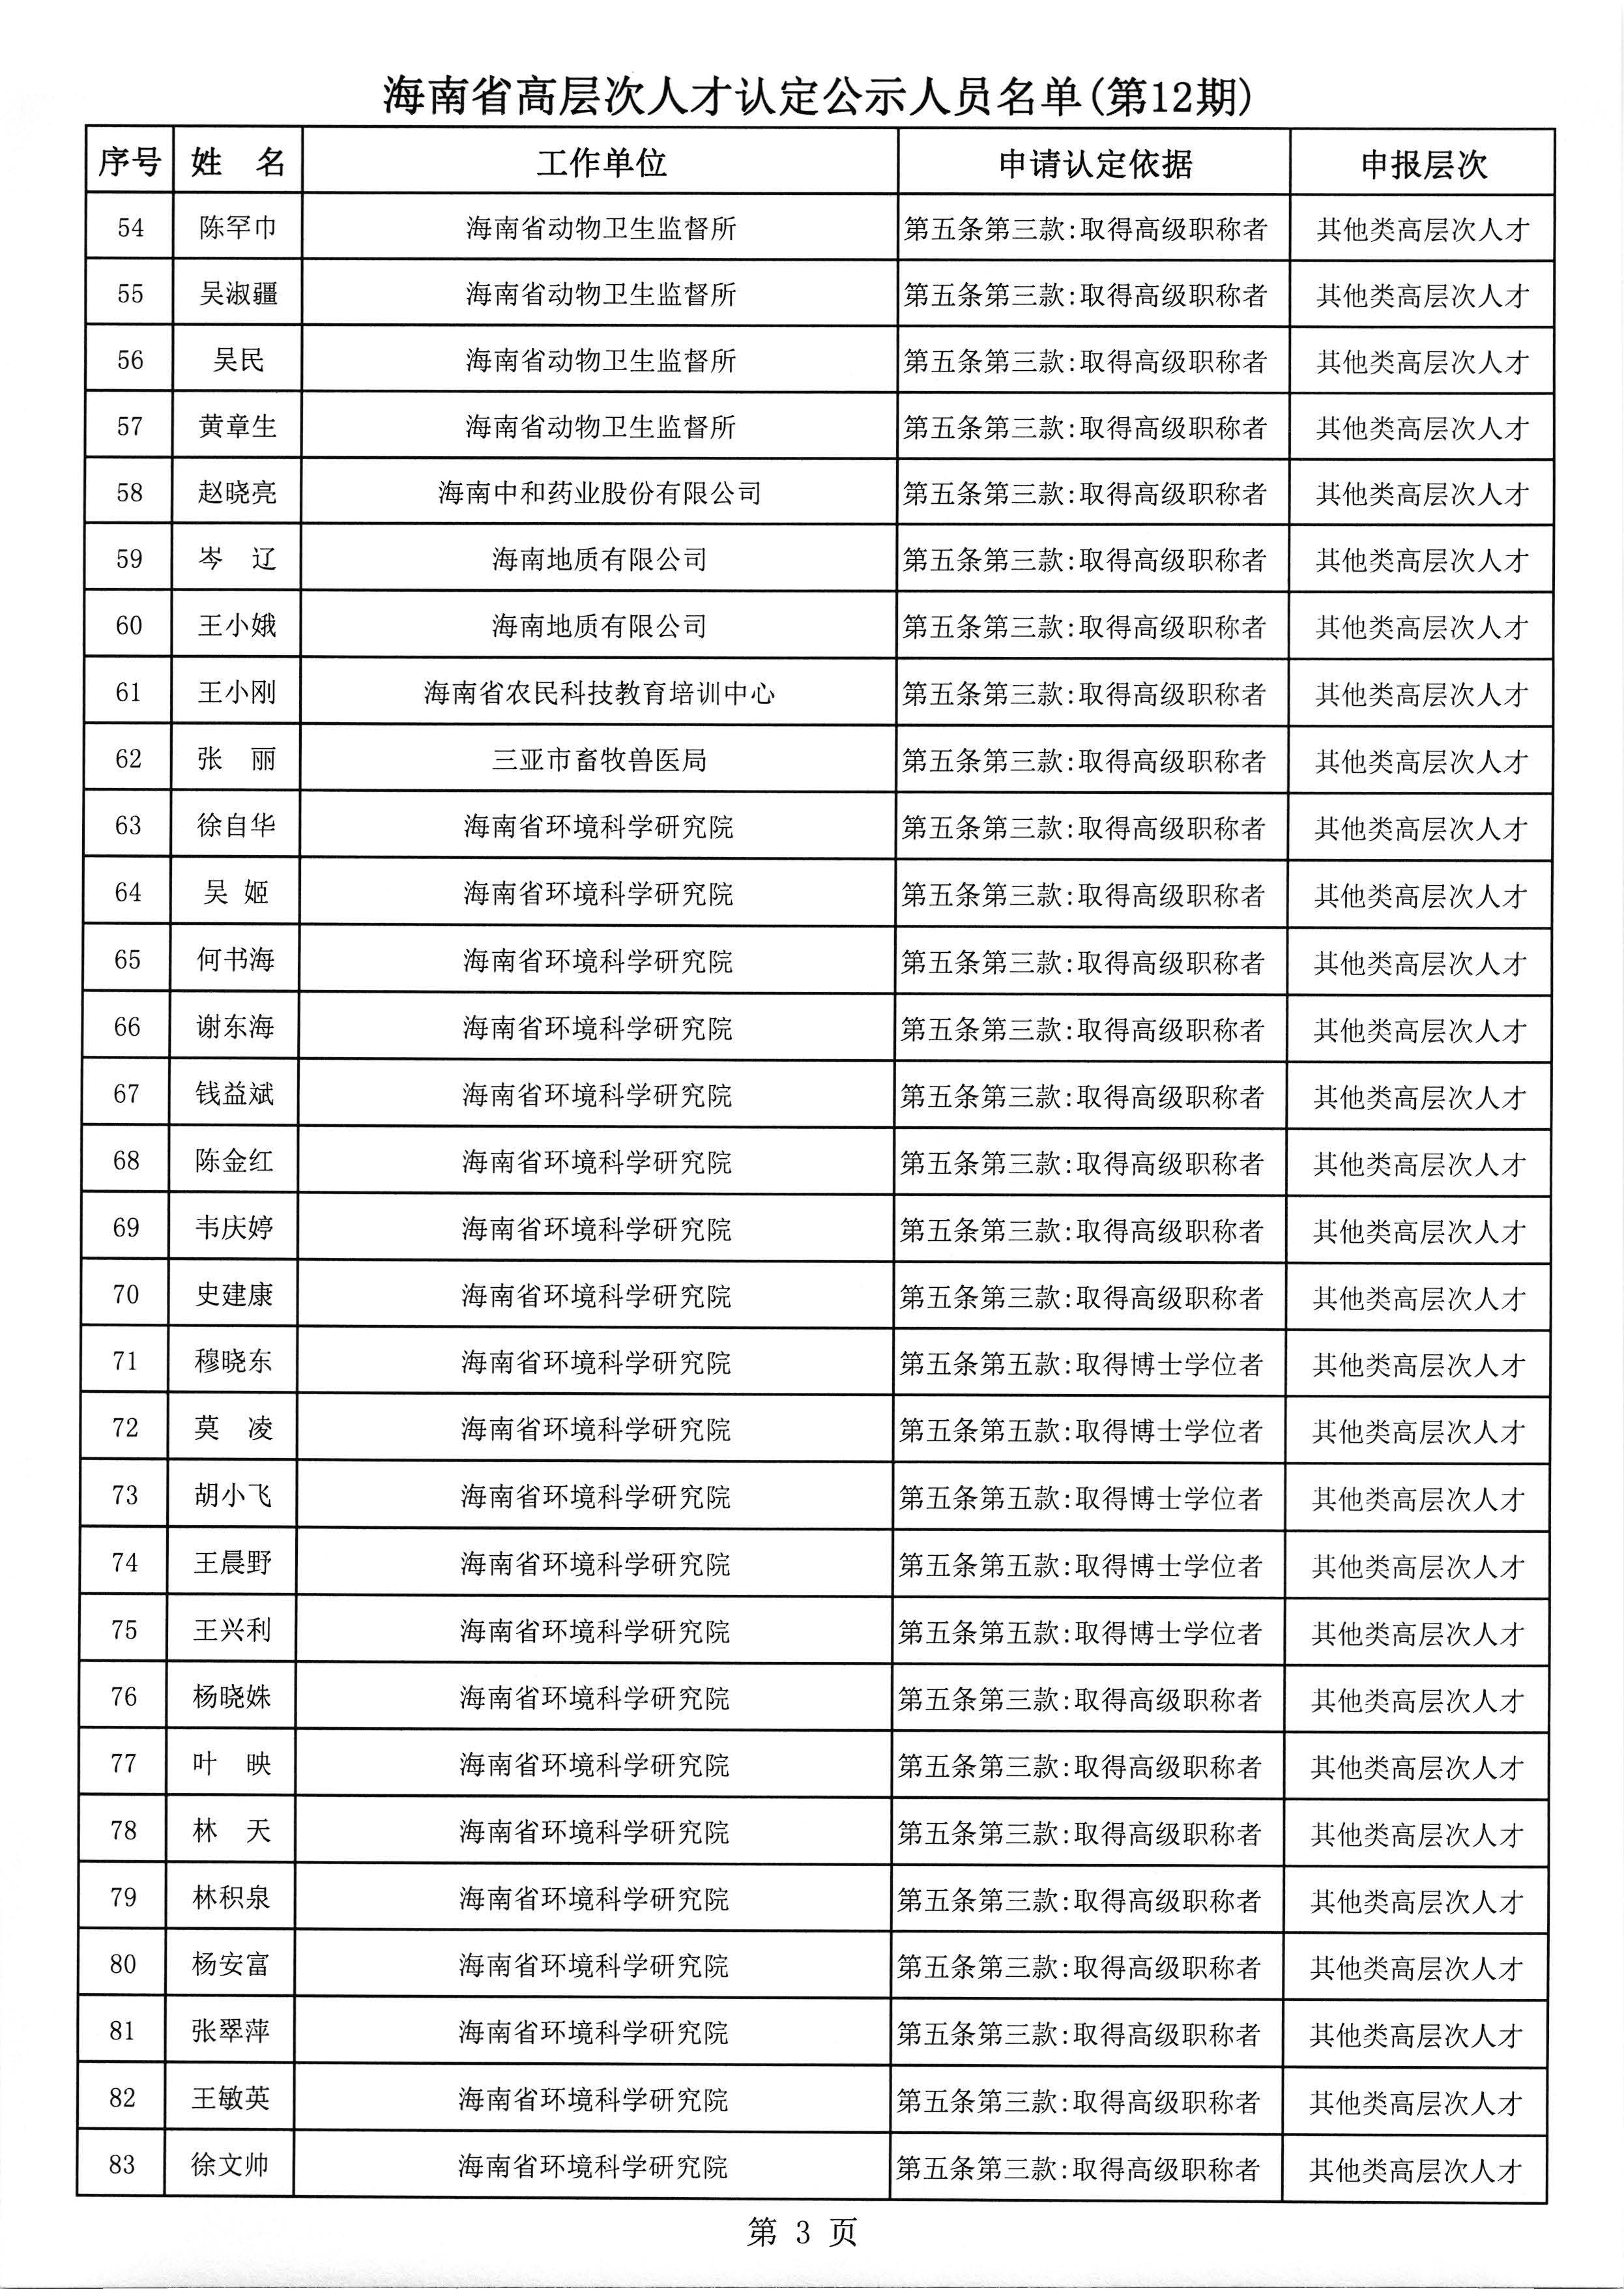 海南省高层次人才认定公示人员名单(第12期)_页面_4